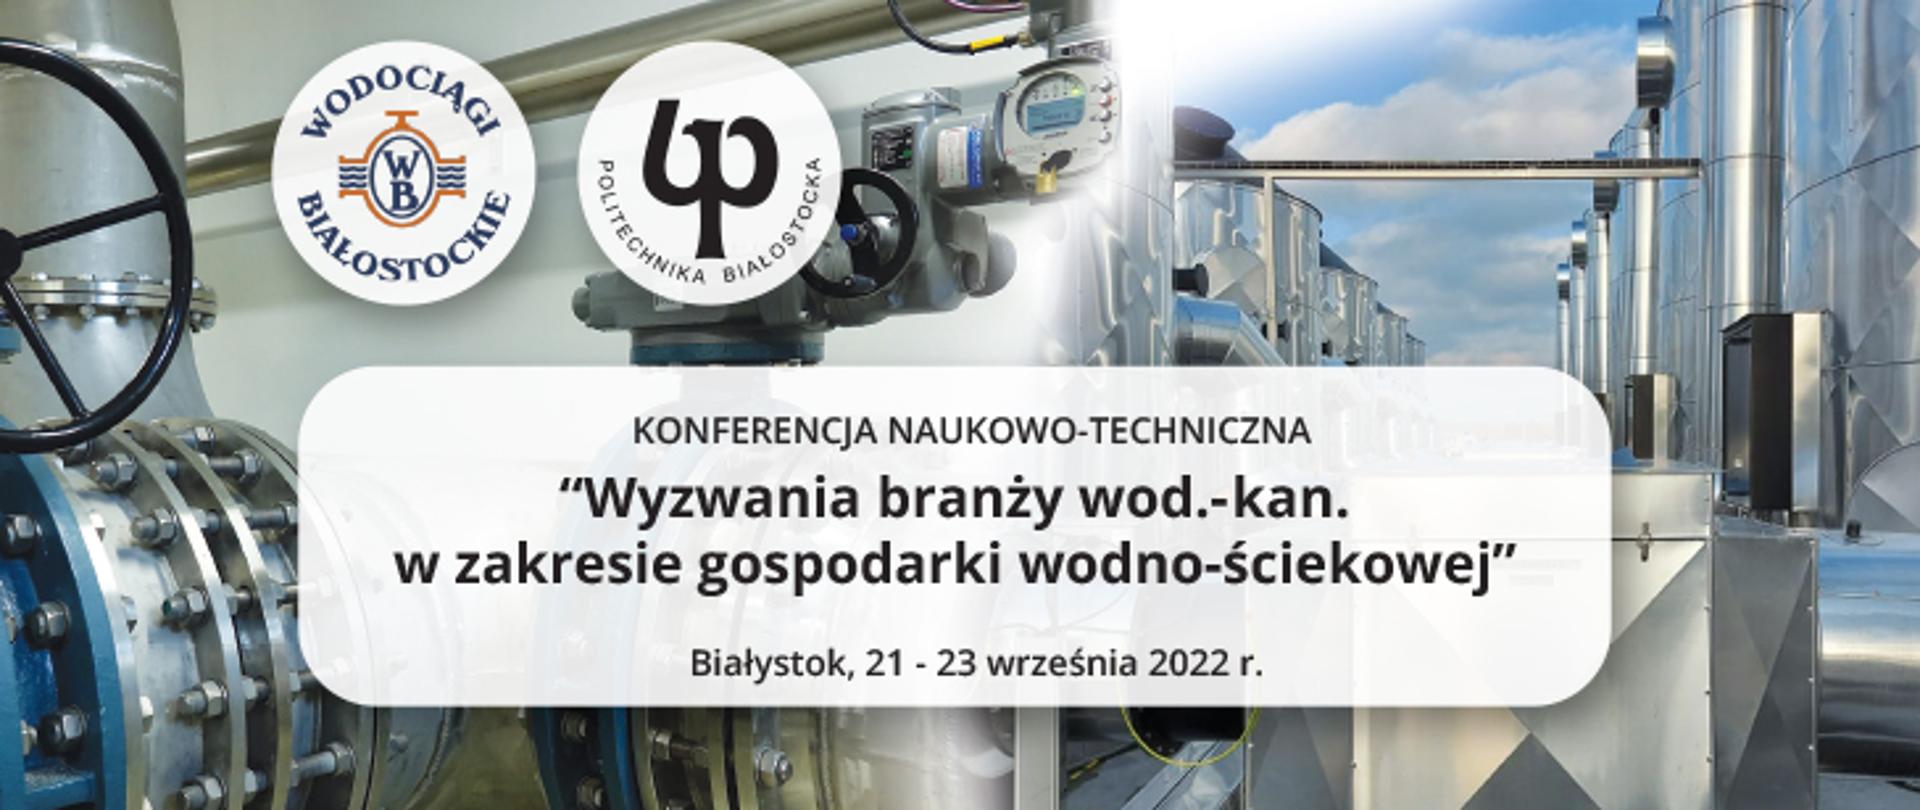 Plansza informacyjna Konferencja Naukowo-Techniczna Politechniki Białostockiej